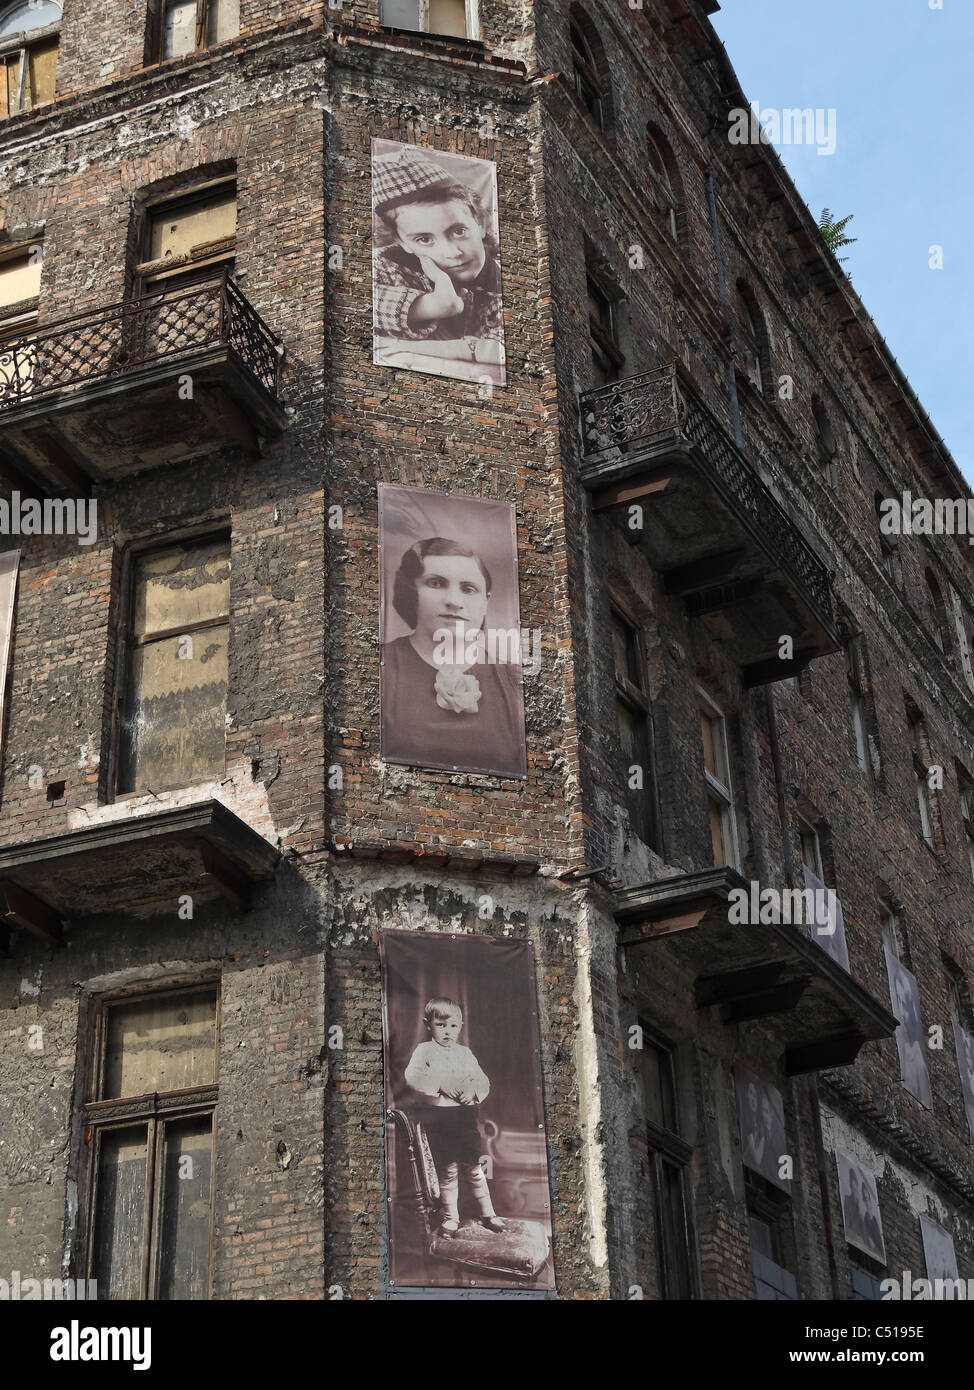 Fotos von Insassen des jüdischen Ghettos in Warschau, Polen, an der Wand eines verbleibenden Gebäudes im Ul Próżna. Stockfoto